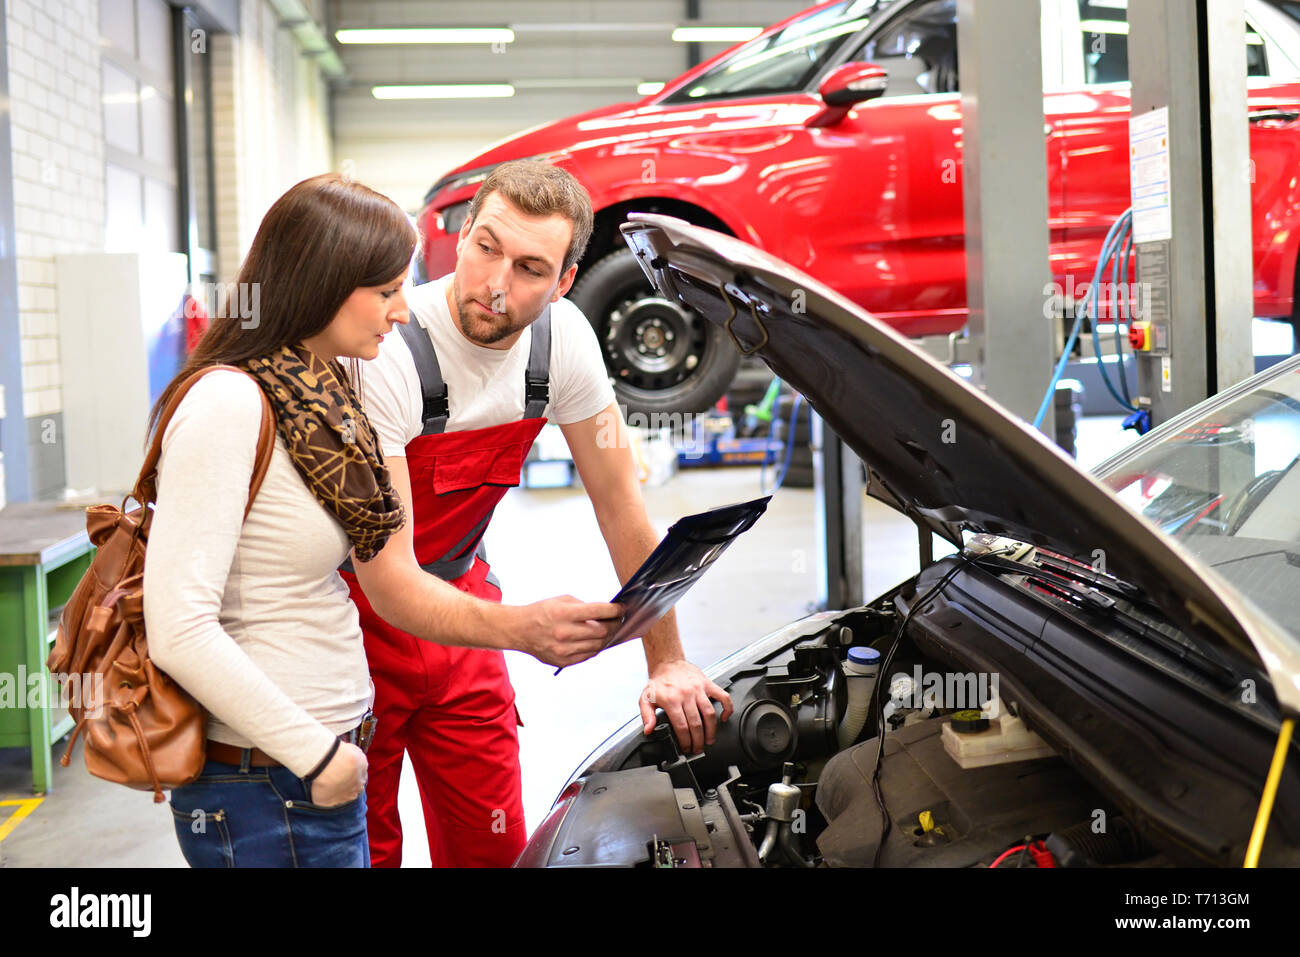 Kundendienst in einer Garage - Mechaniker und der Frau die Reparatur eines Fahrzeugs besprechen Stockfoto